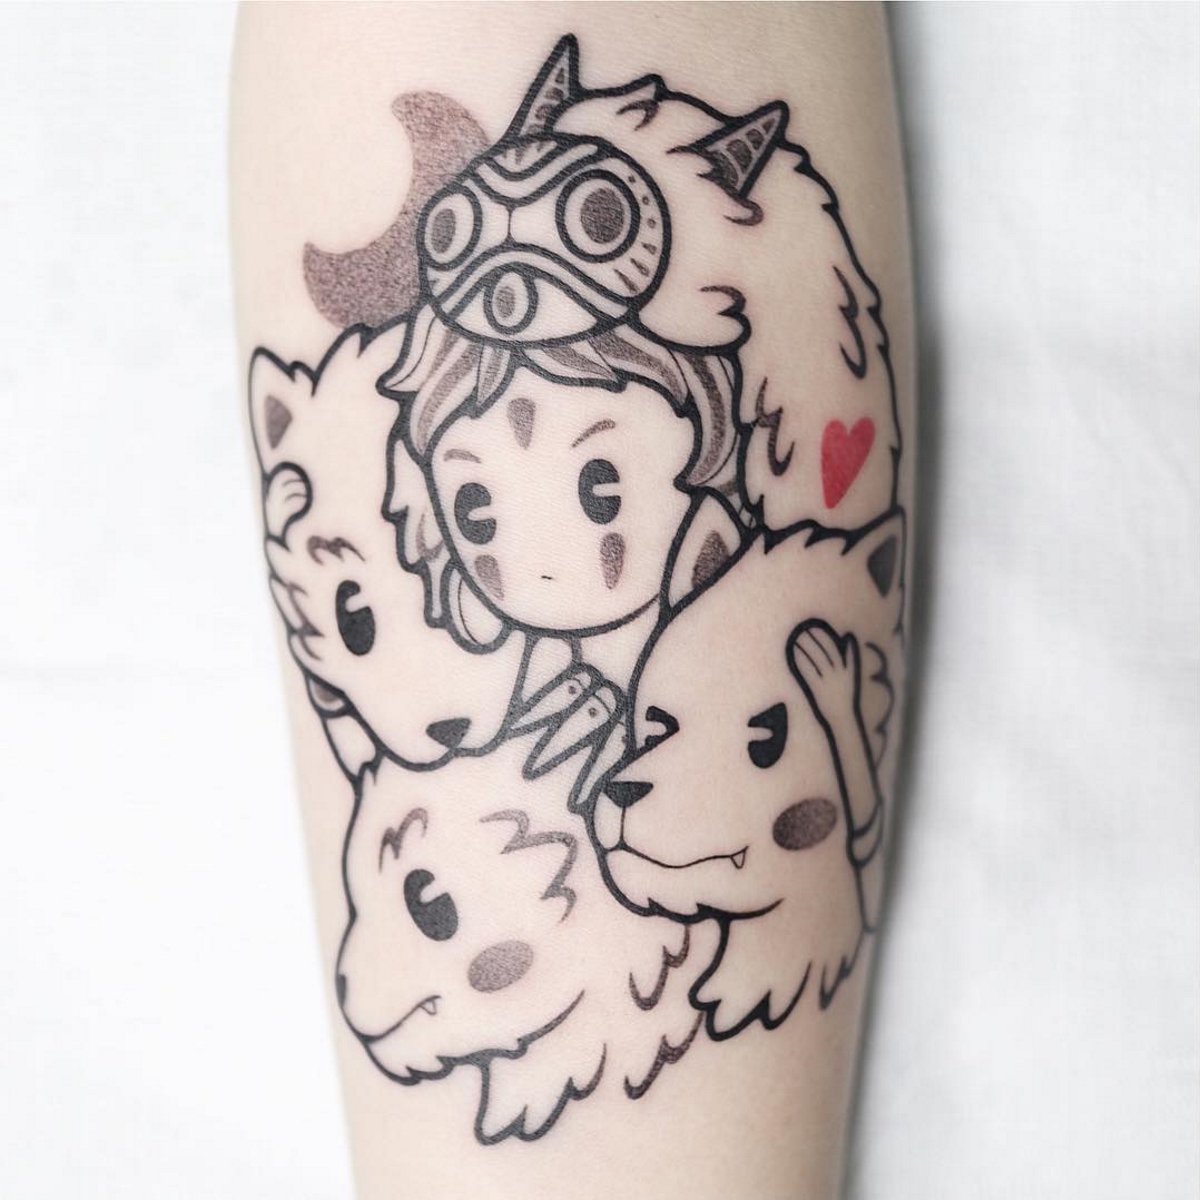 Princess mononoke tattoo